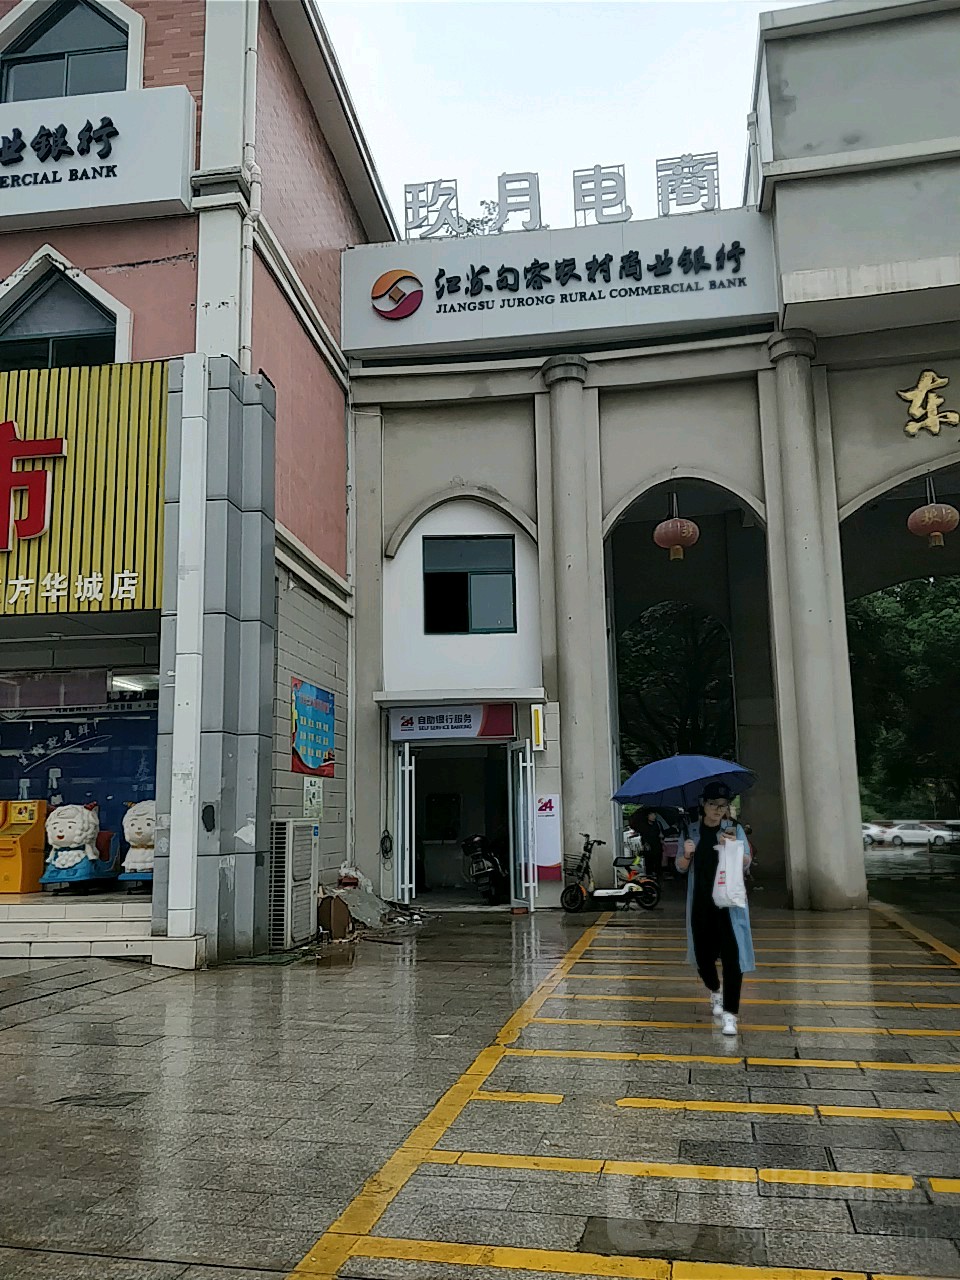 江蘇句容農村商業銀行24小時自助銀行服務